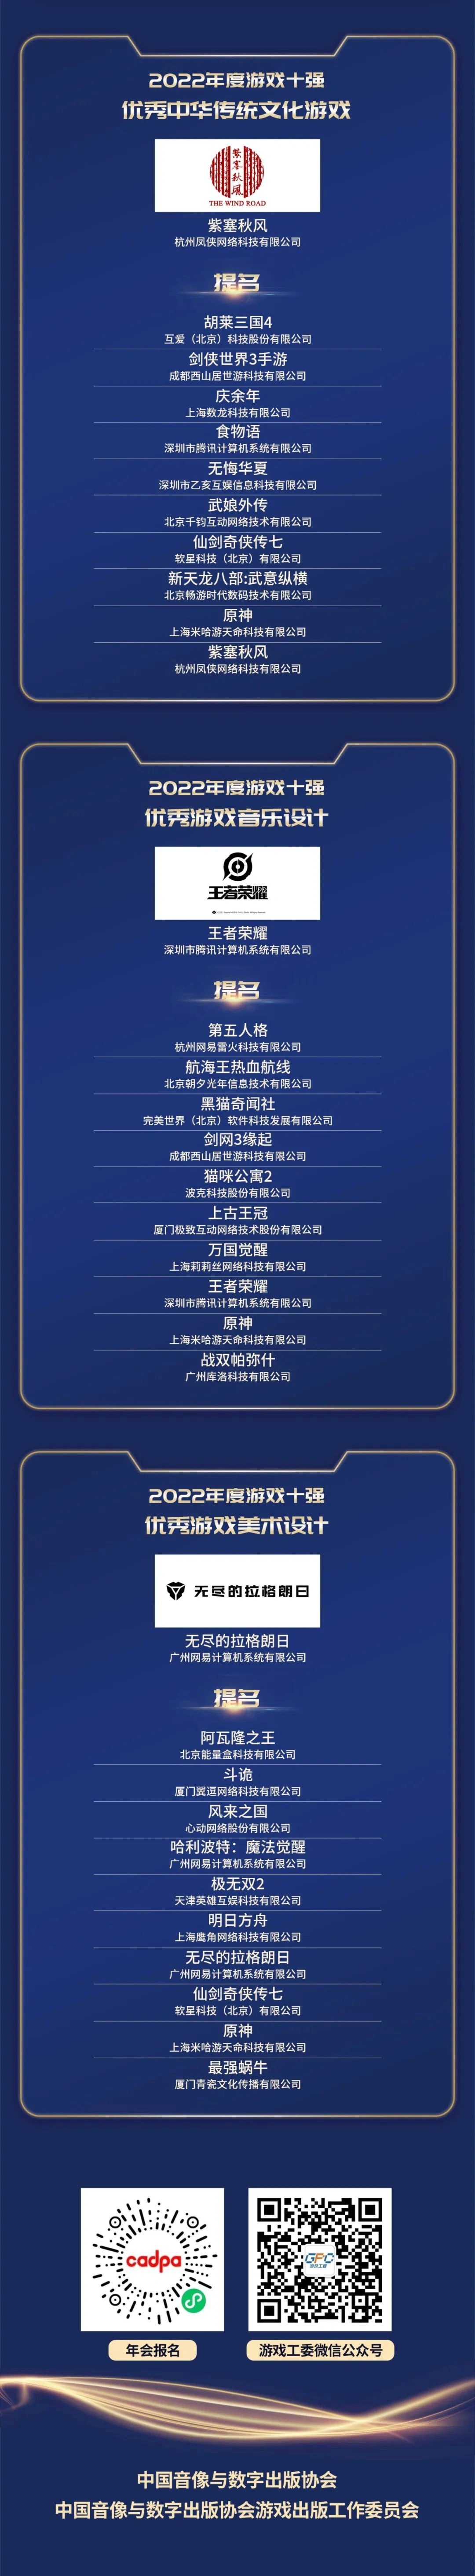 中国游戏产业年会发布2022游戏年度榜 《原神》等上榜